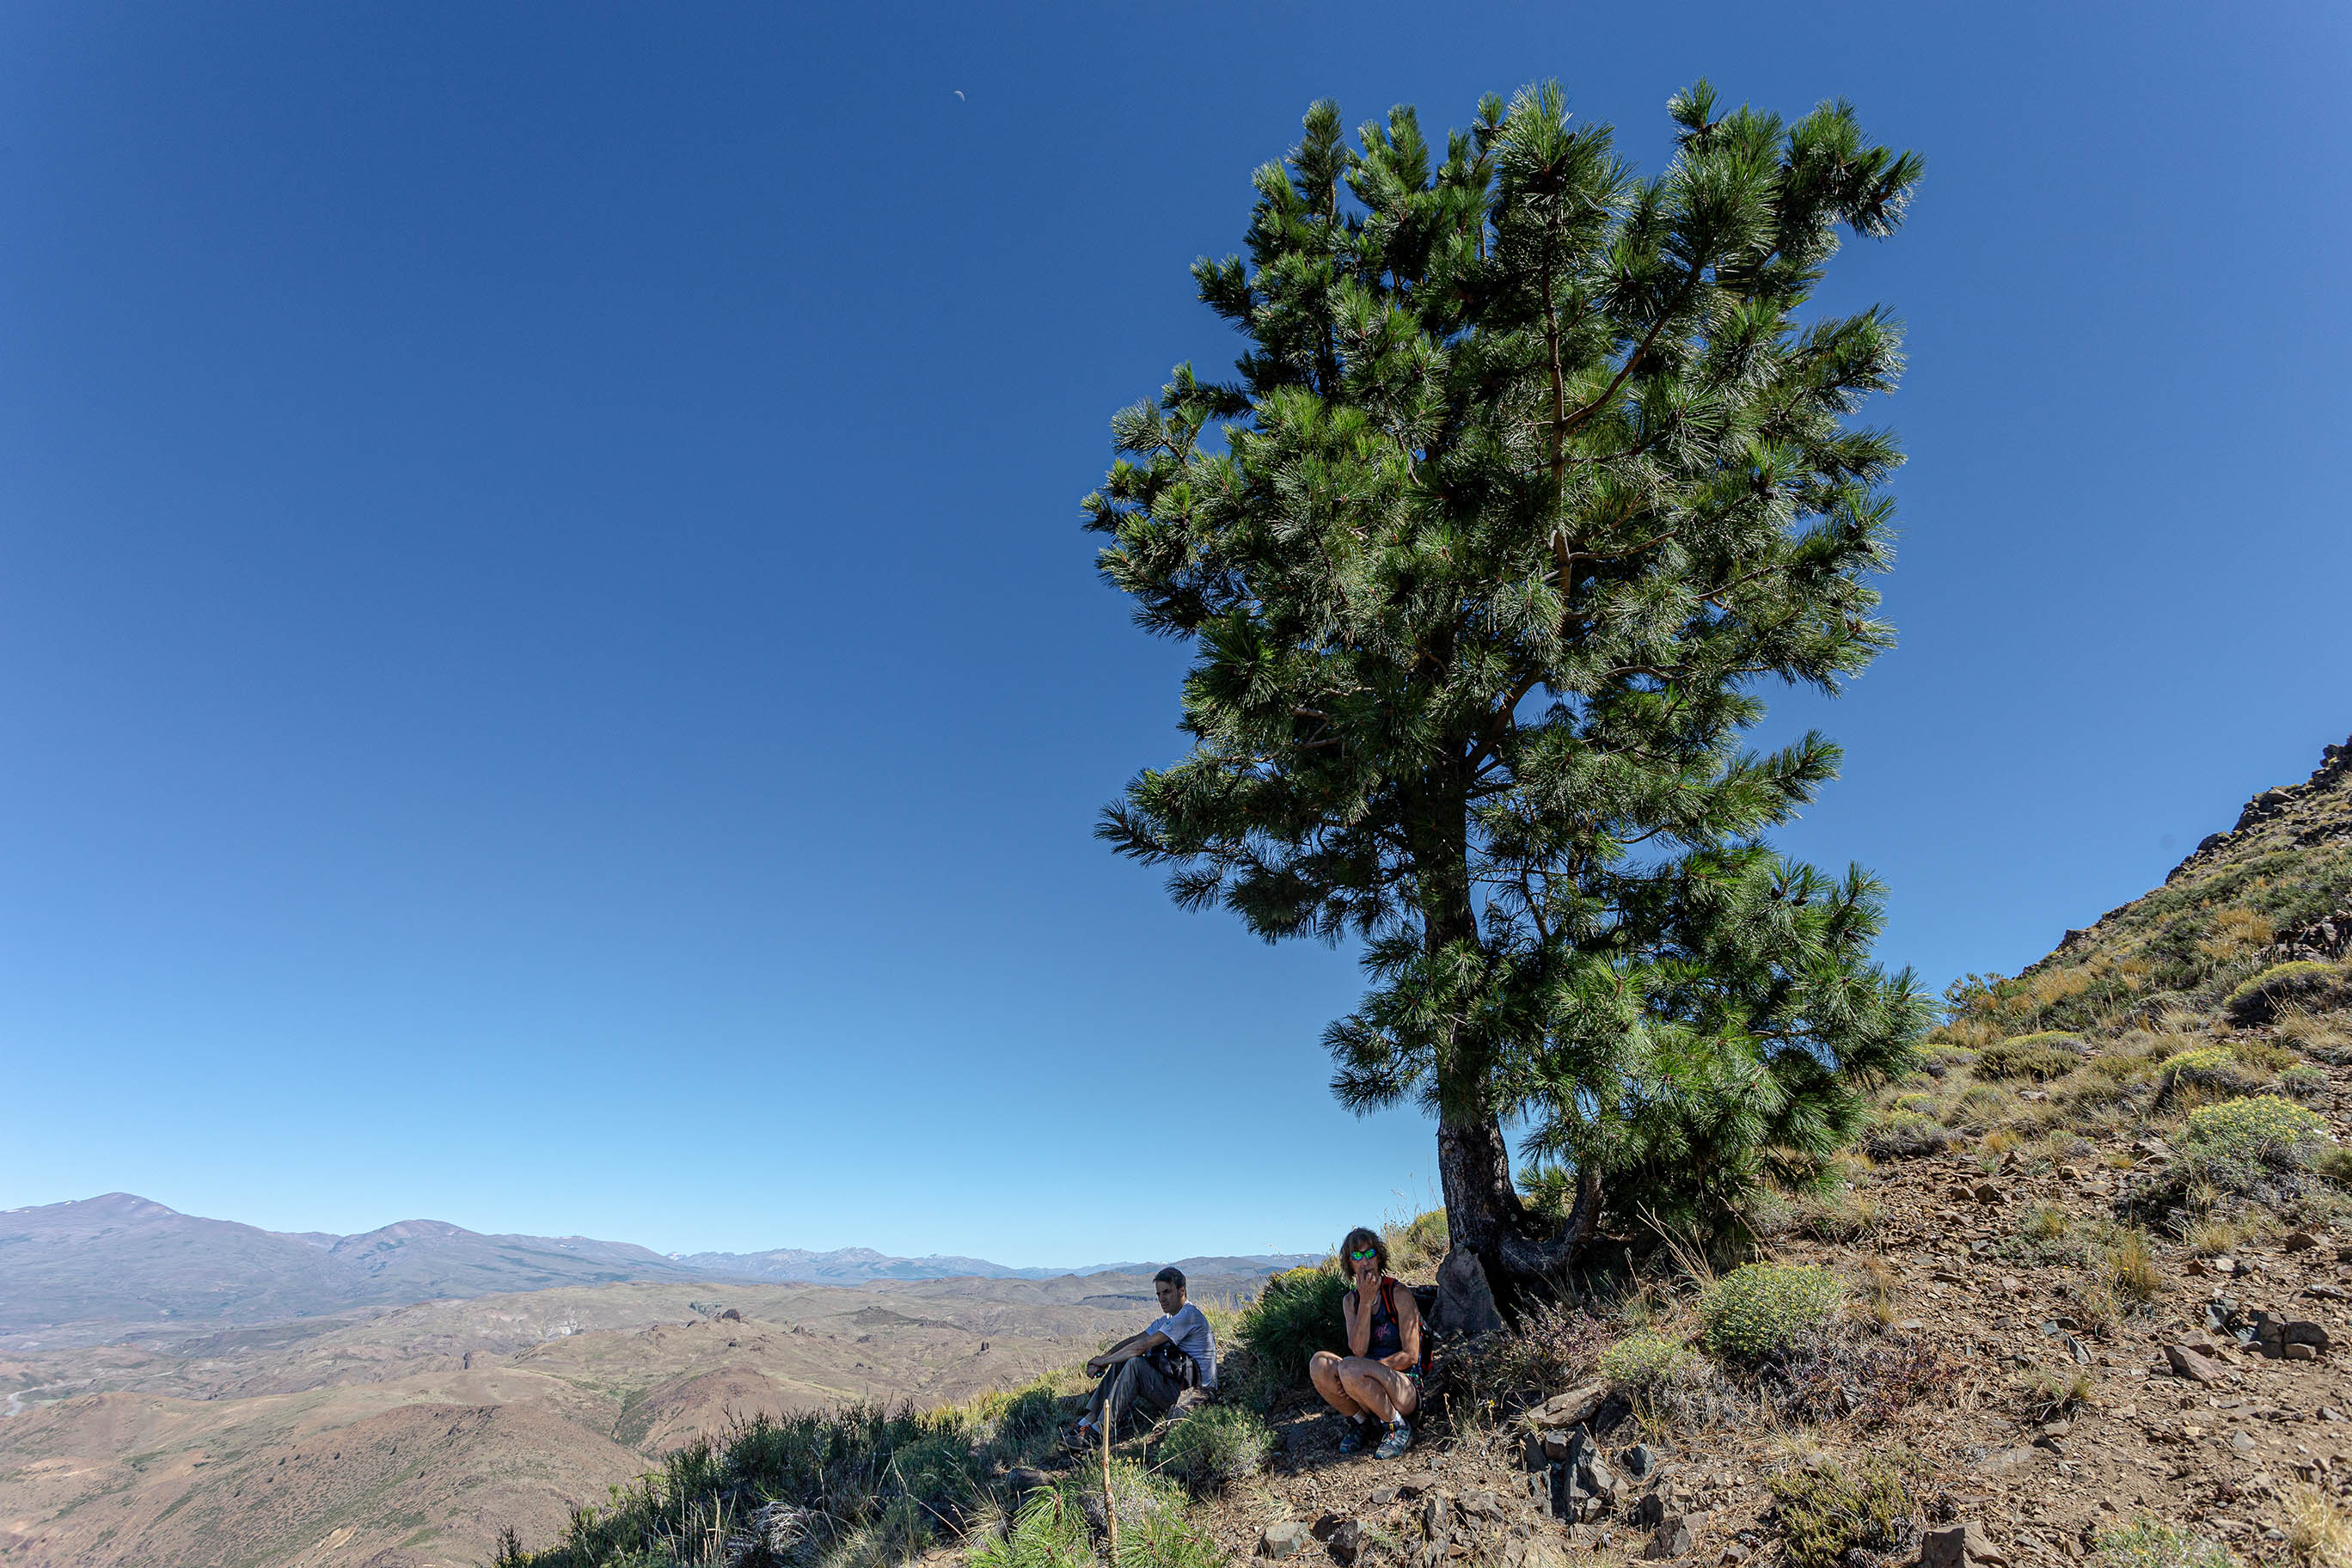 El pino guacho en Huinganco, norte neuquino. Fotos de Ricardo Kleine Samson.